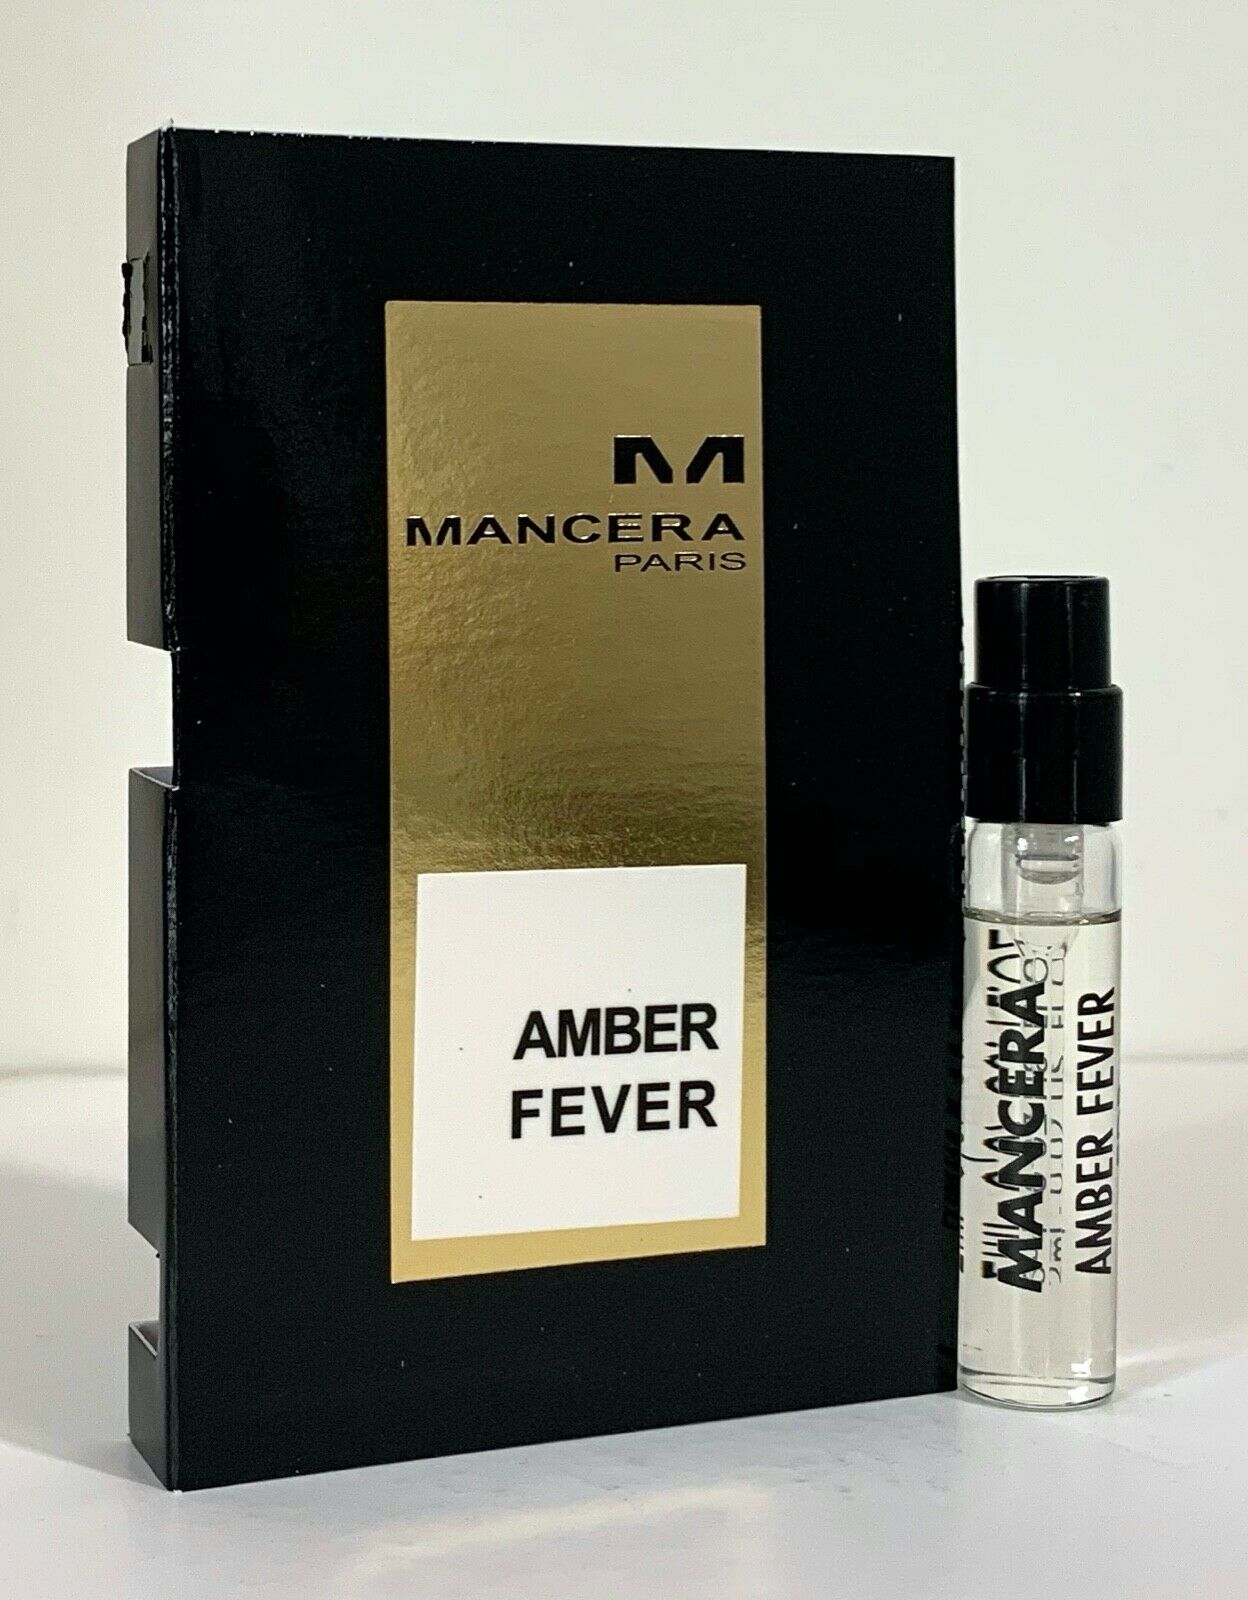 škvrna Amber Fever oficiálna vzorka vône 2ml 0.06 fl. oz., Mancera Amber Fever 2 ml 0.06 fl. oz. oficiálna vzorka parfumu